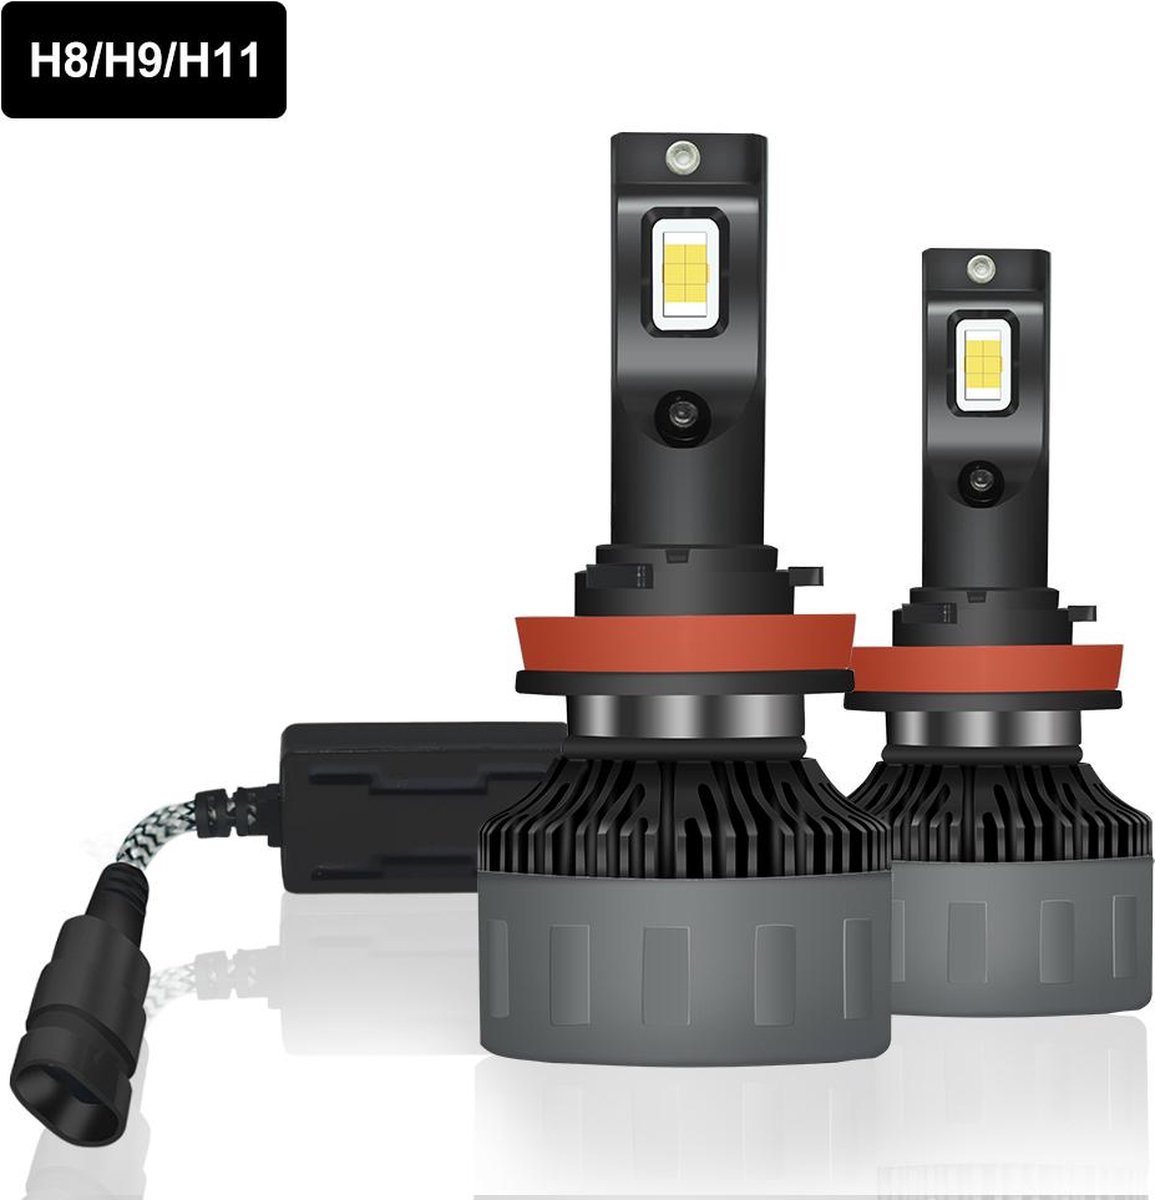 TLVX H9 Premium High Power LED lampen 31.200 Lumen 6000k Helder Wit licht (set 2 stuks) CANBUS EMC adapter, Extra Fel Wit licht, CSP LED CHIP 100 Watt Auto, Dimlicht - Grootlicht – Mistlicht -Koplampen - Autolamp - Autolampen - 12V - APK Lichtbeeld